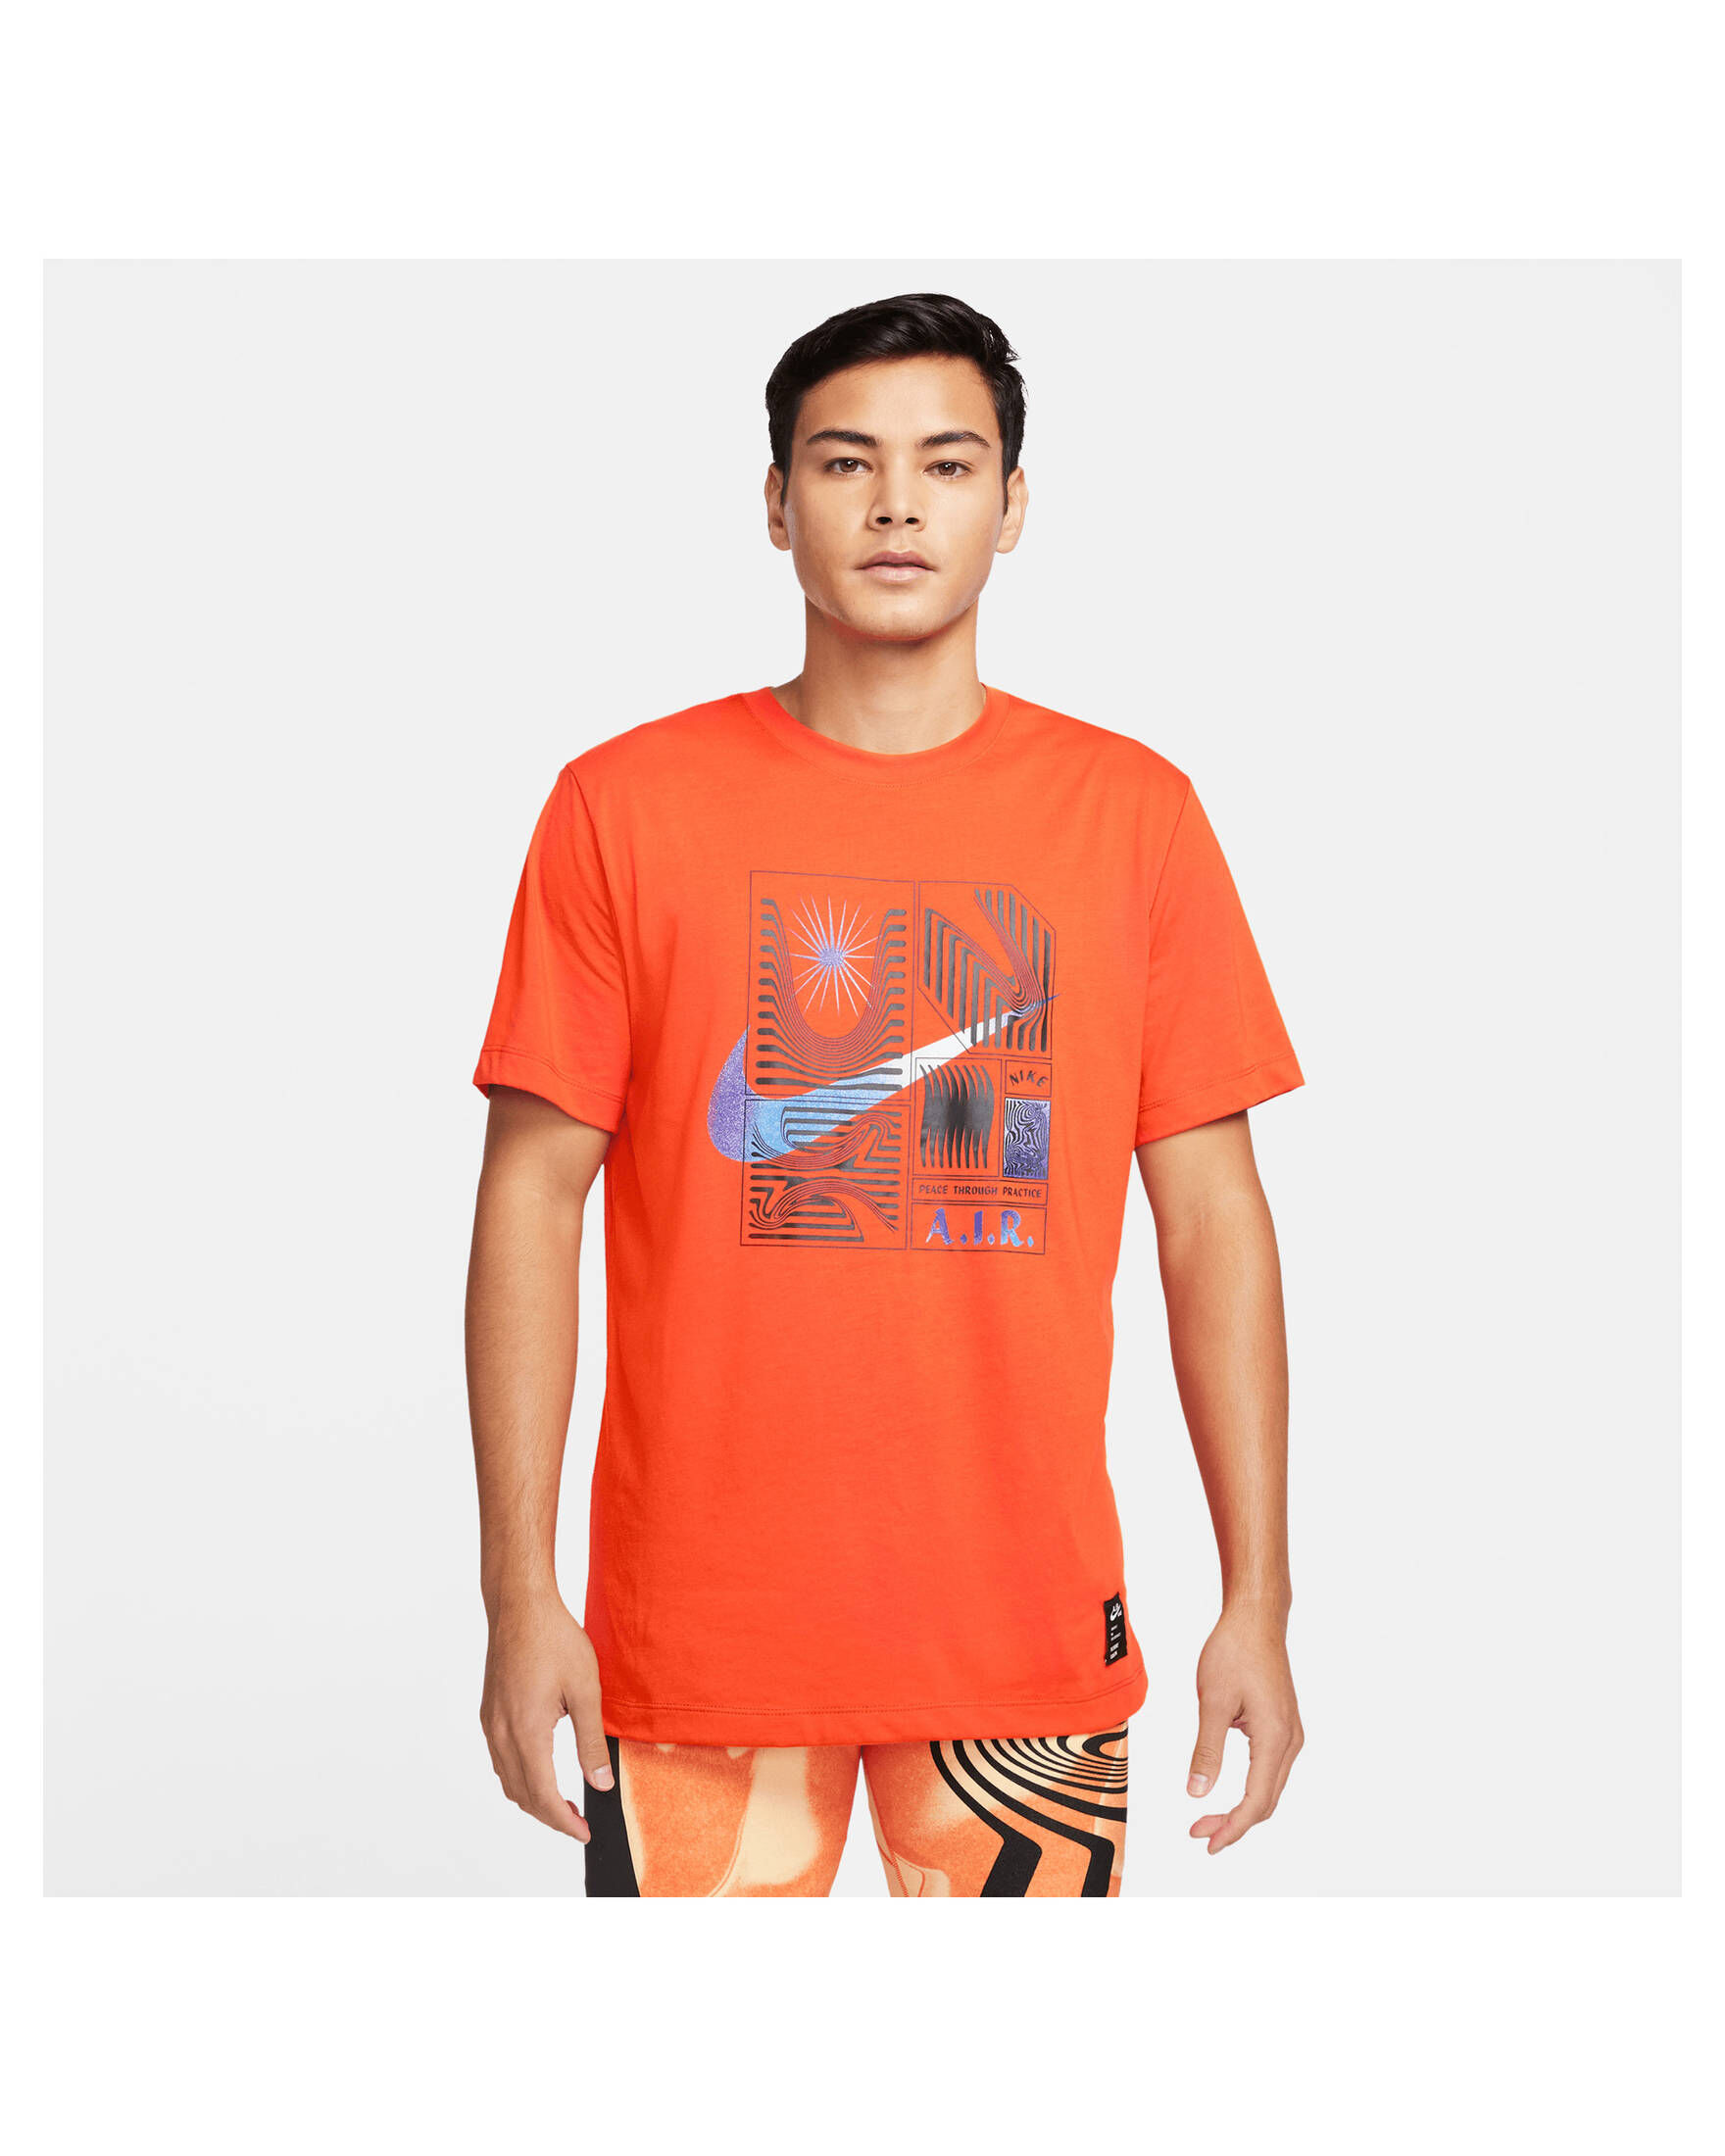 Nike Herren T-Shirt | engelhorn A.I.R. kaufen NIKE YOGA DRI-FIT